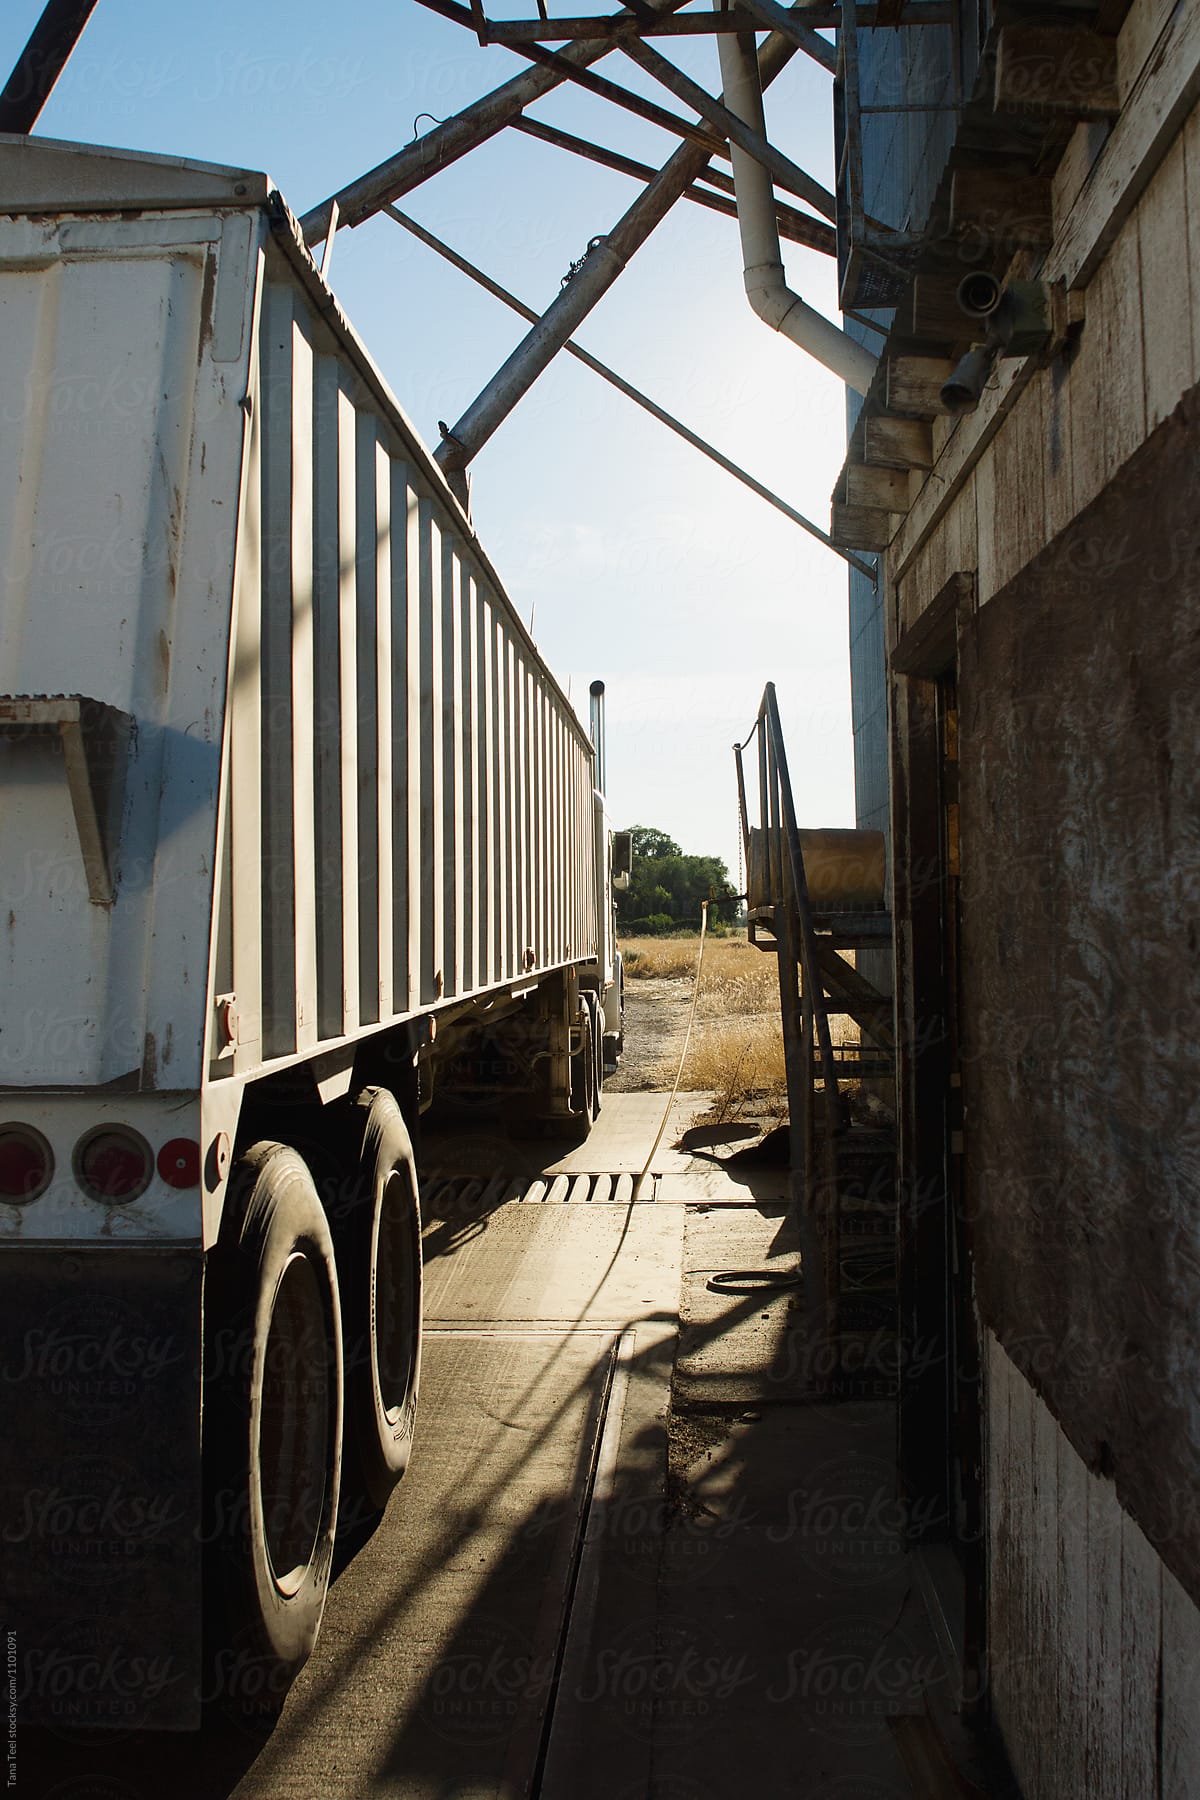 trailer emptying grain